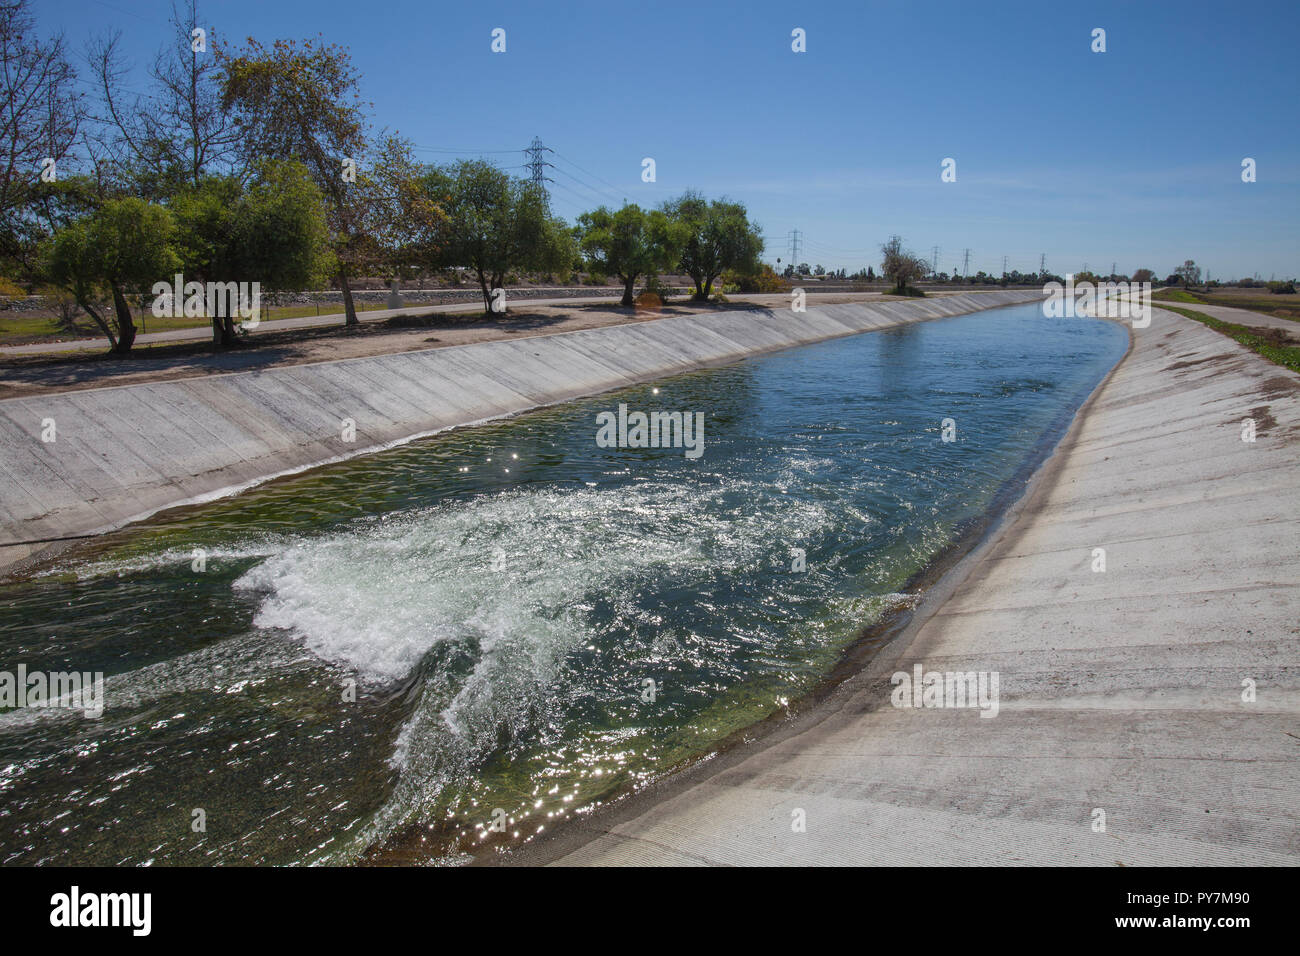 San Gabriel extendiendo motivos, distrito de reabastecimiento de agua - WRD, Pico Rivera, el condado de Los Angeles Foto de stock